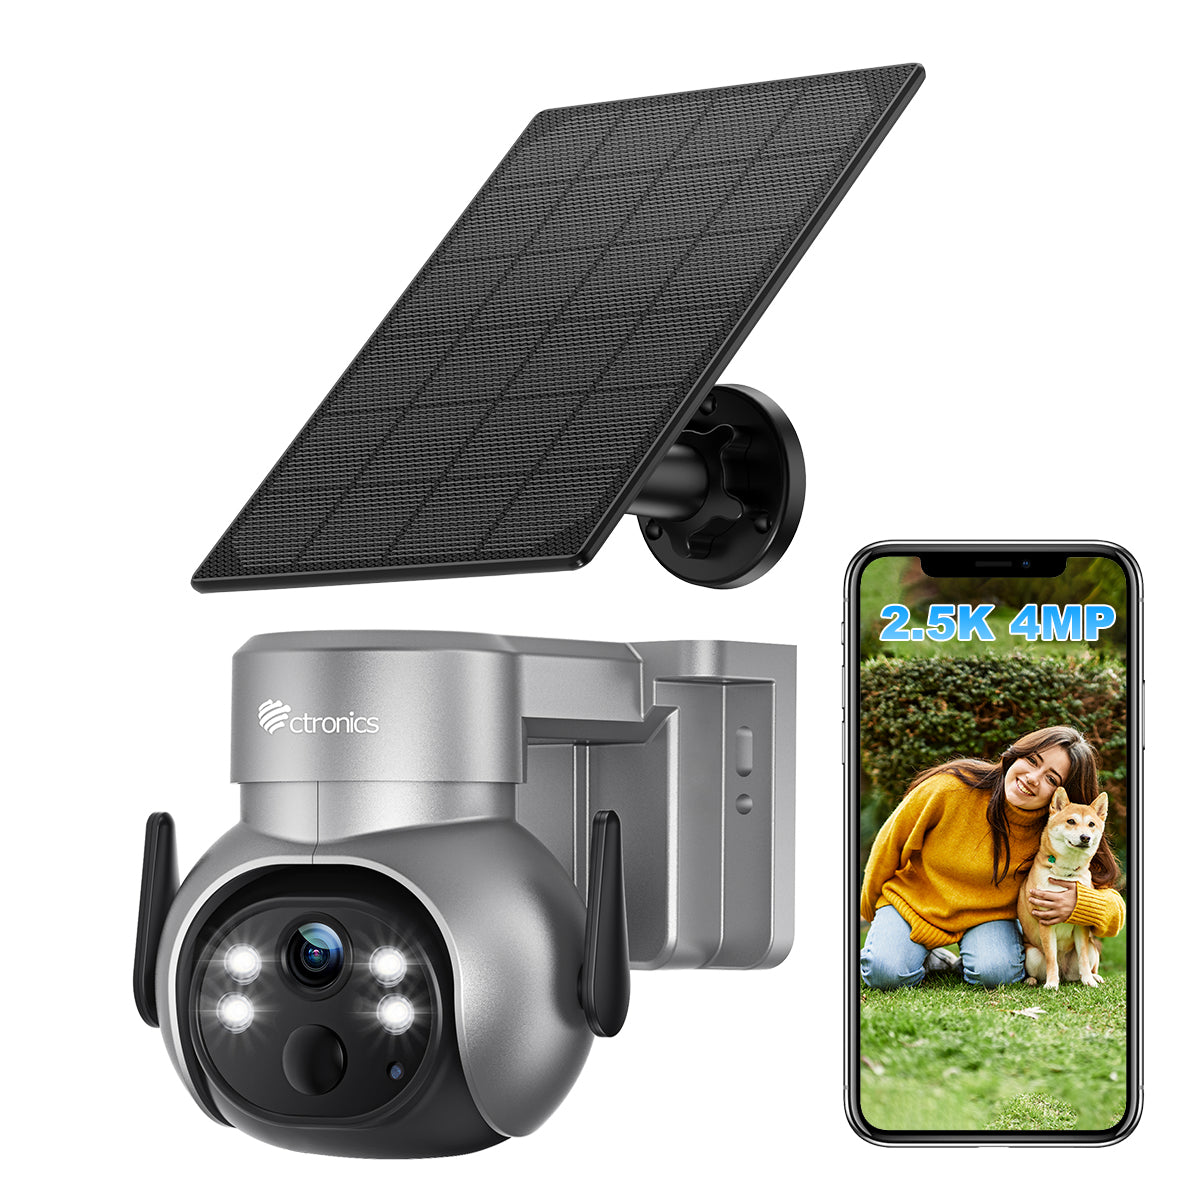 2,5K 4MP Caméra Surveillance WiFi Extérieur sans Fil sur Batterie et Panneau Solaire Détection Humaine PIR